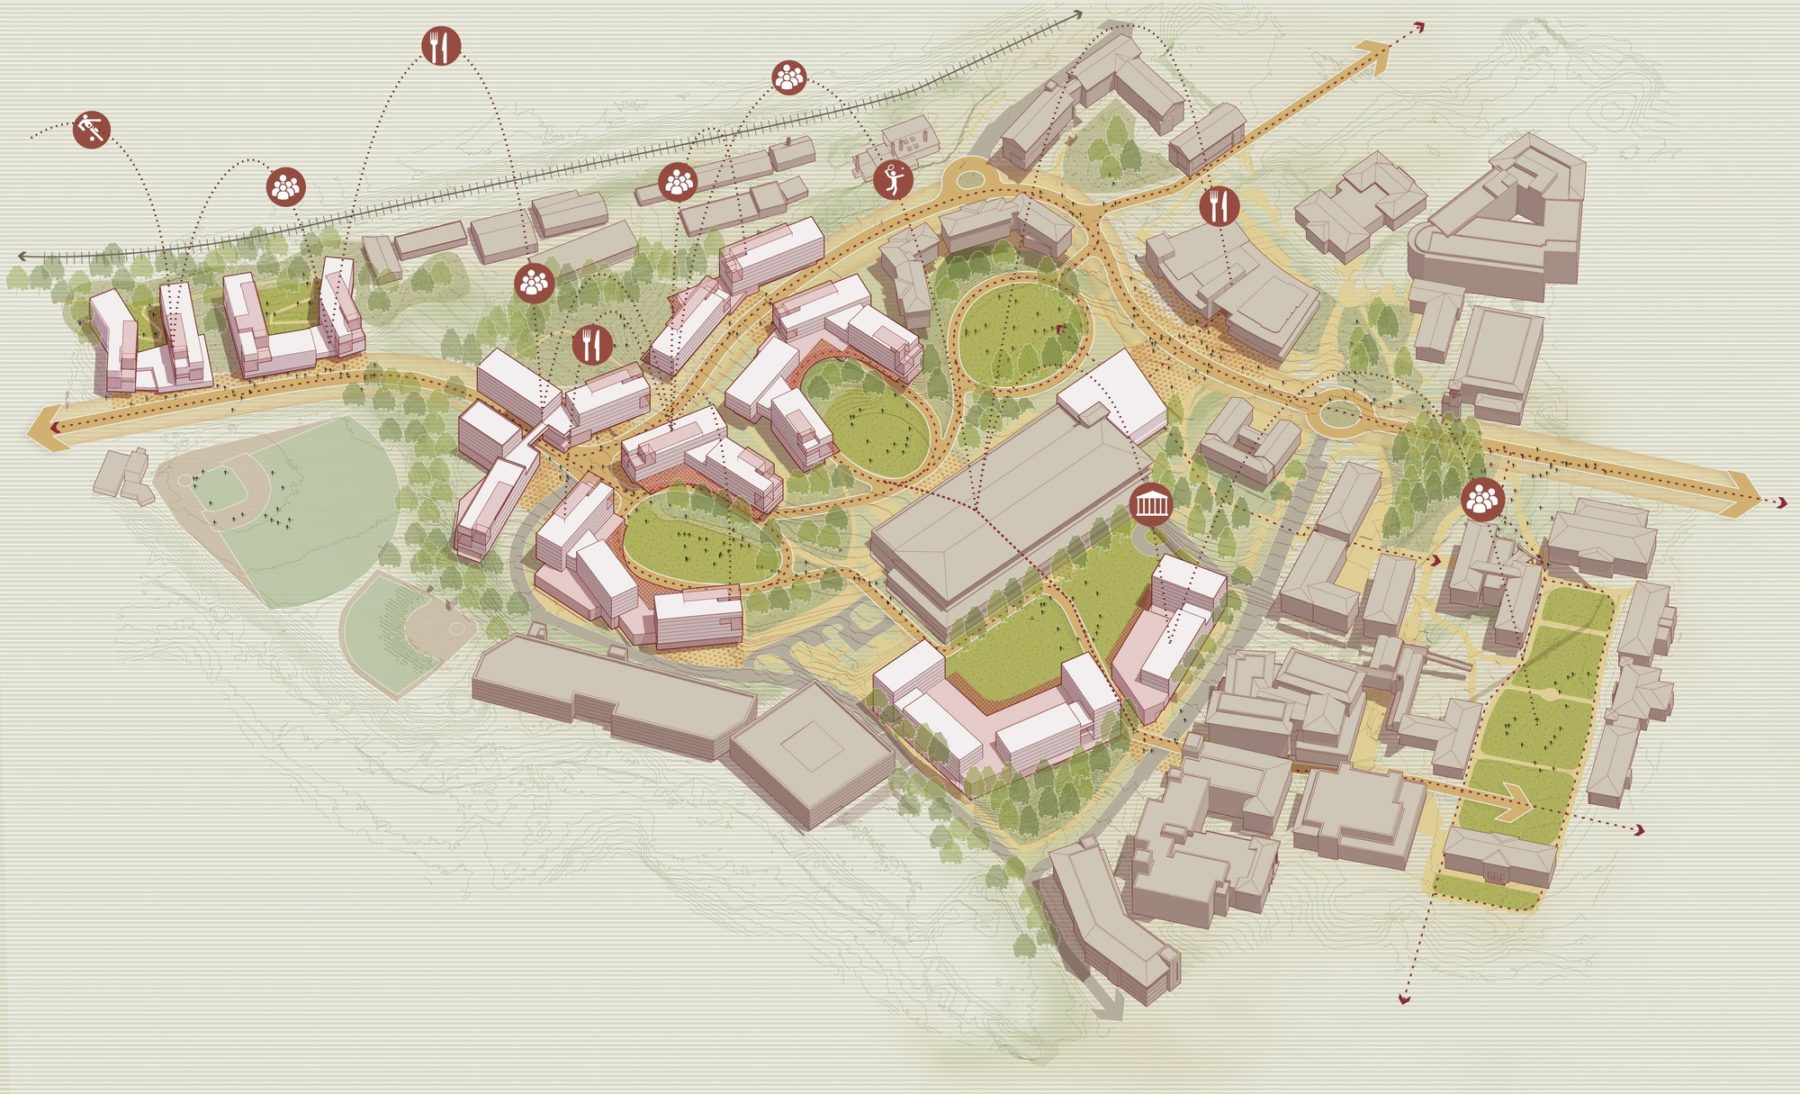 aerial diagram of campus core buildings